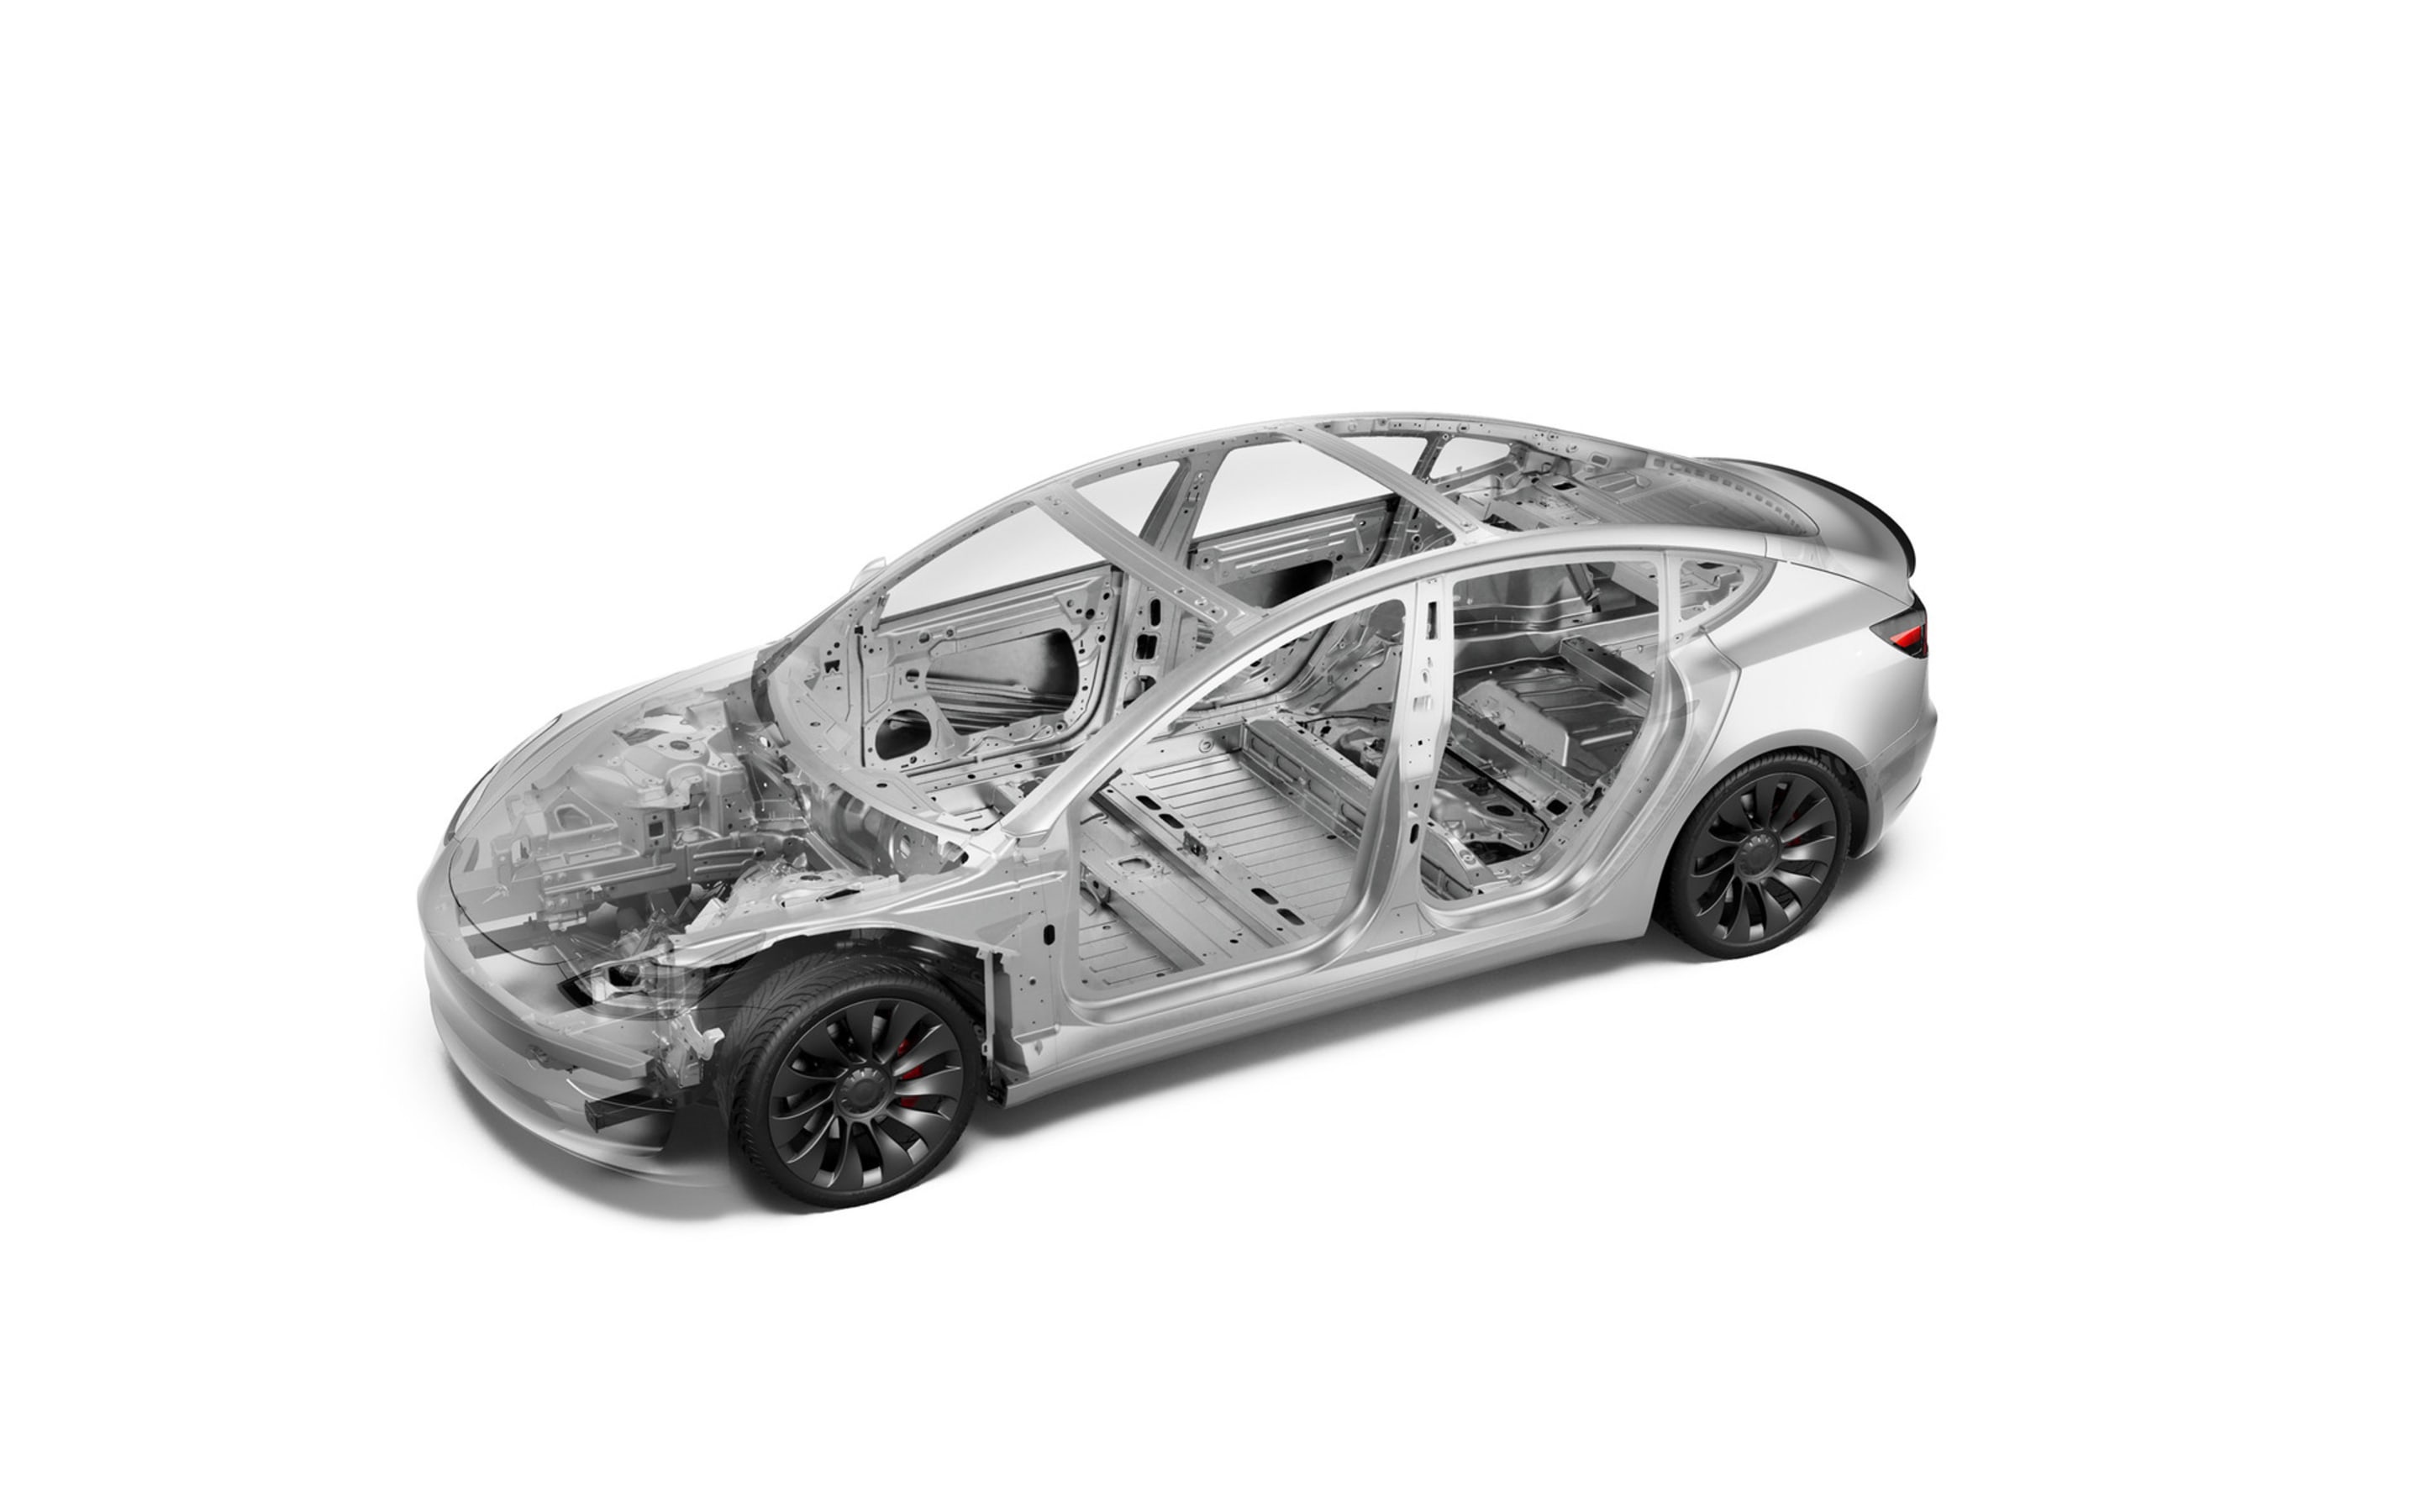 Imaginea principală privind siguranța vehiculului Model 3